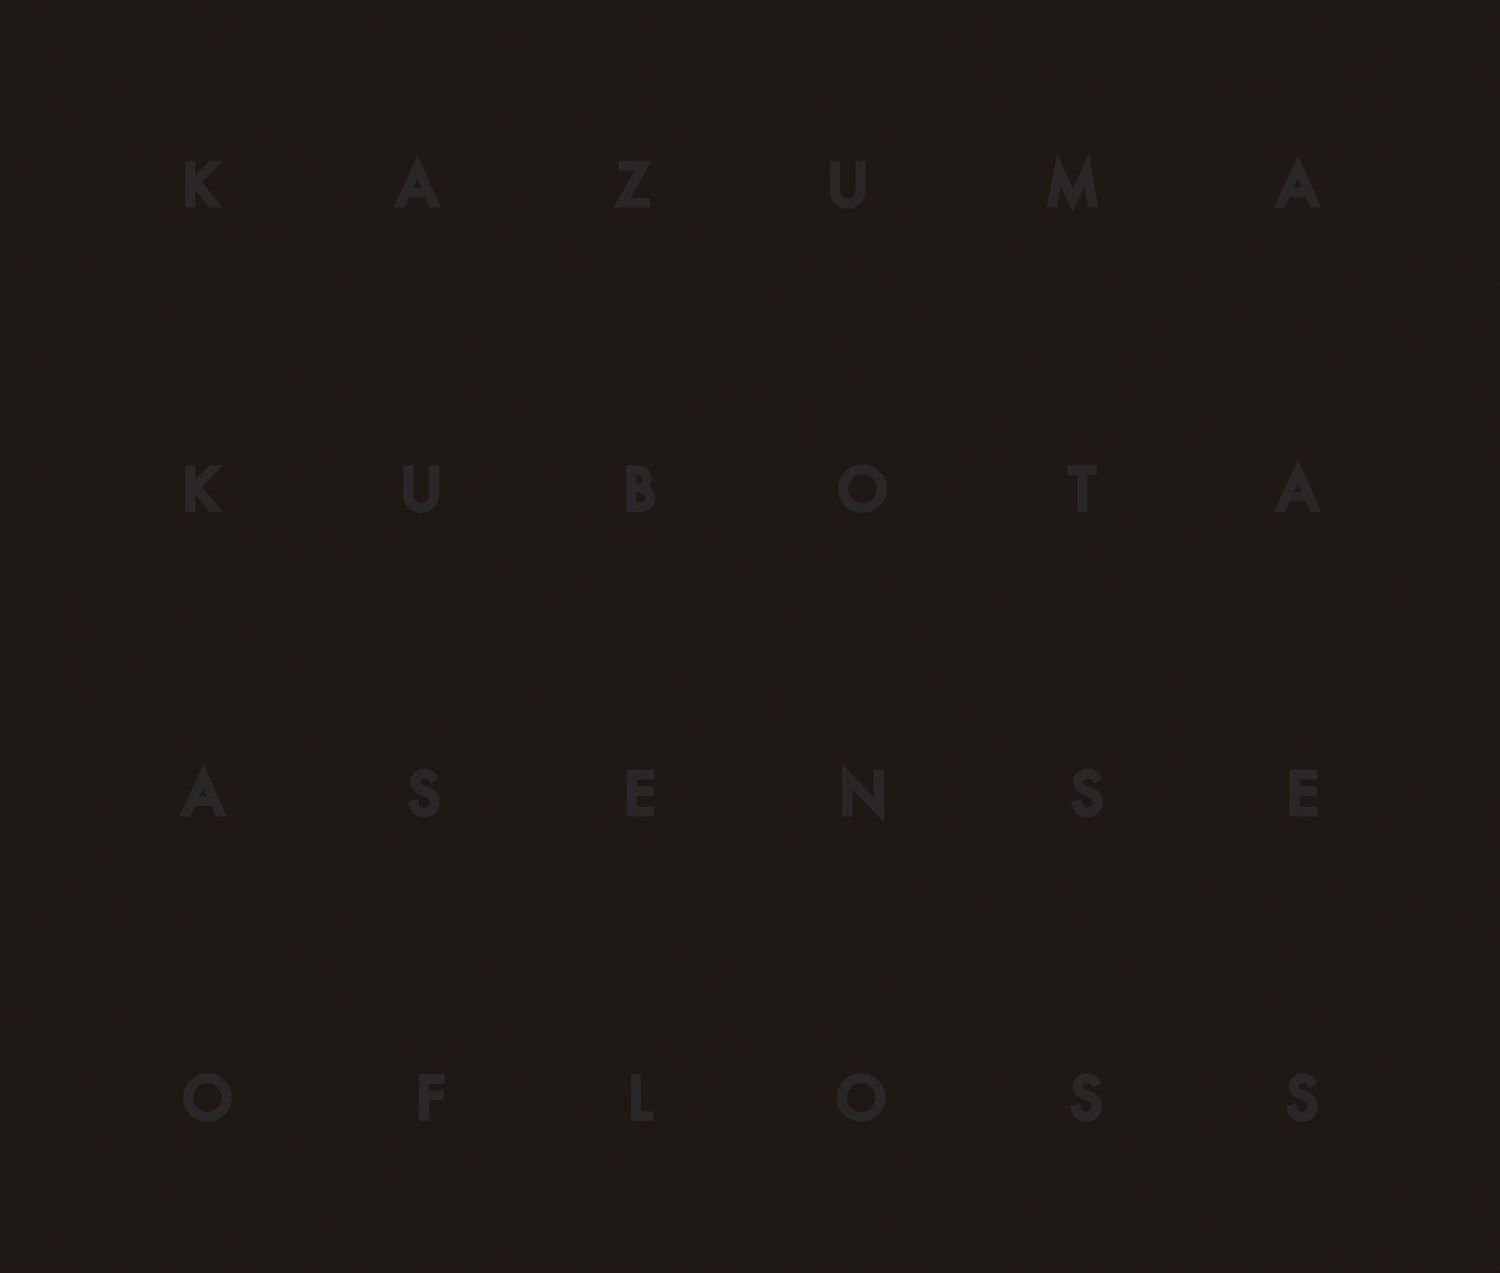 Kazuma Kubota 'A Sense of Loss'